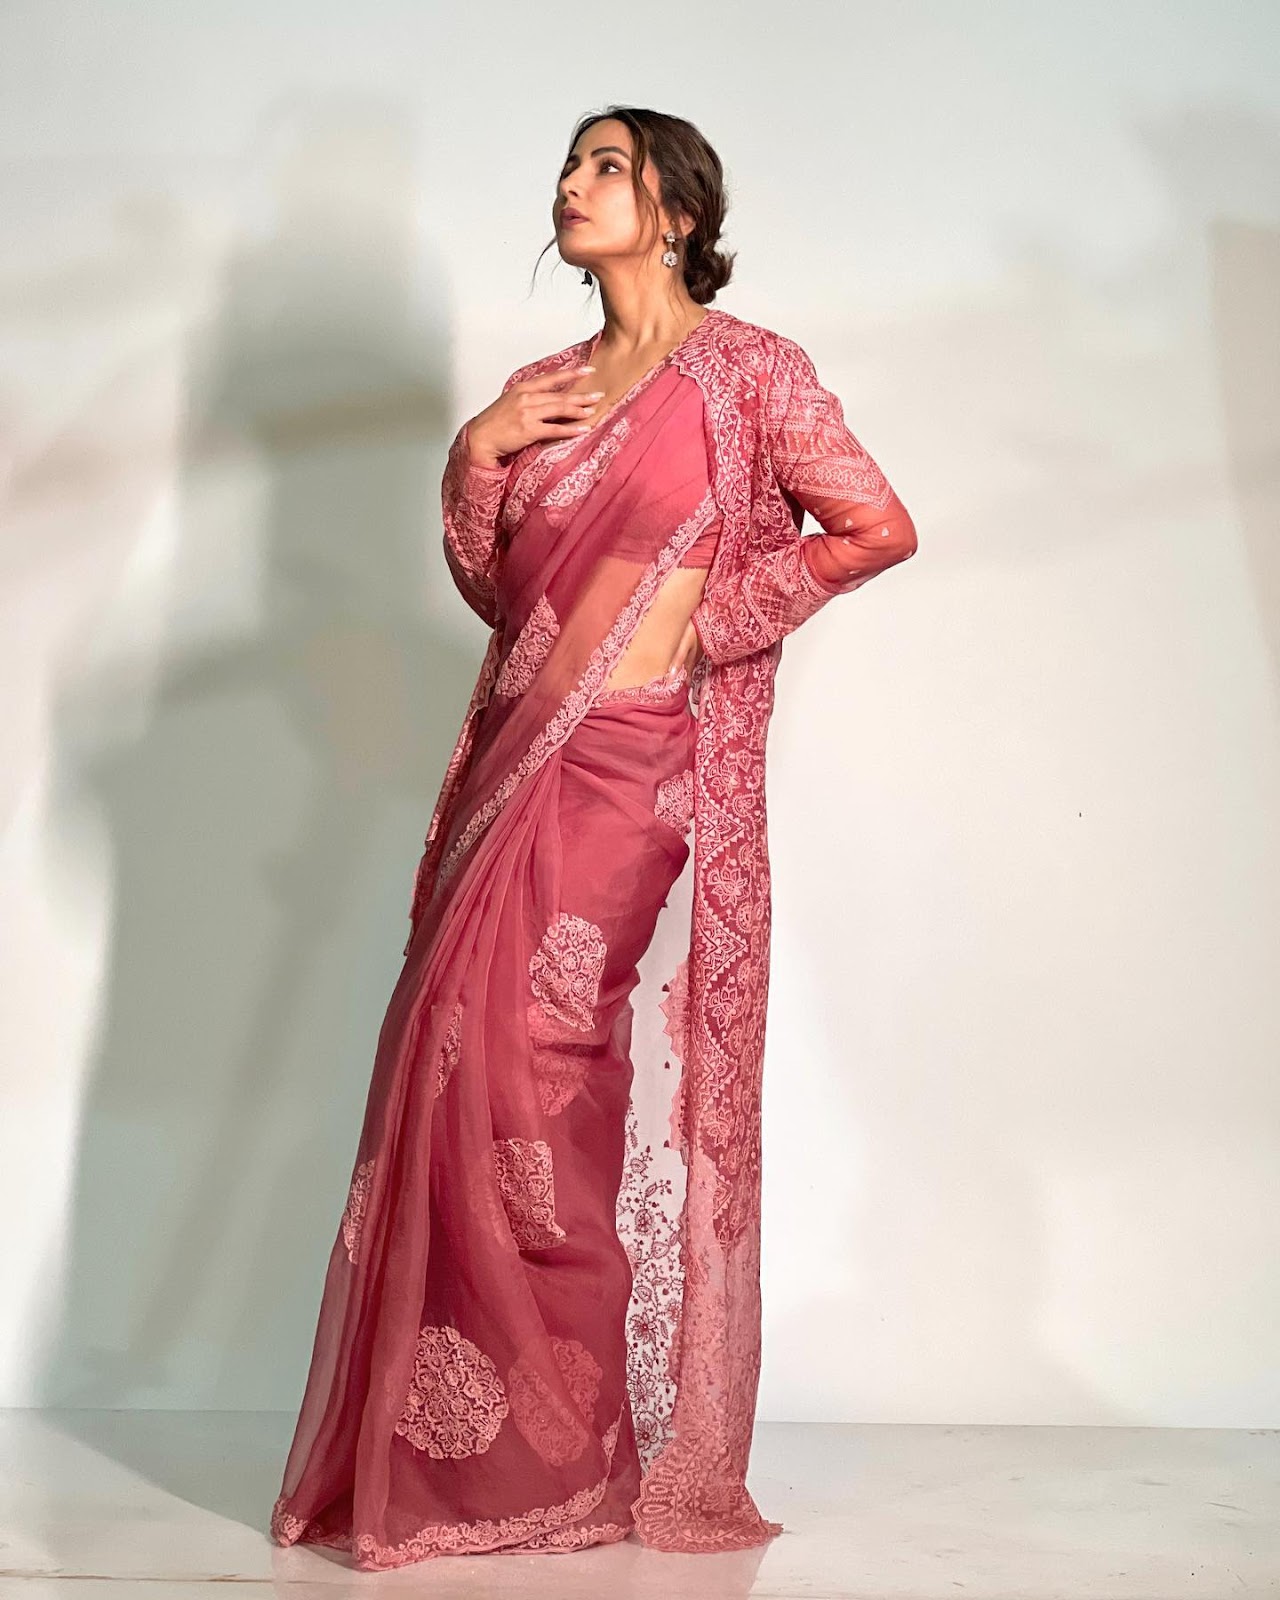 Hina Khan sheer pink saree cape stylish hot actress